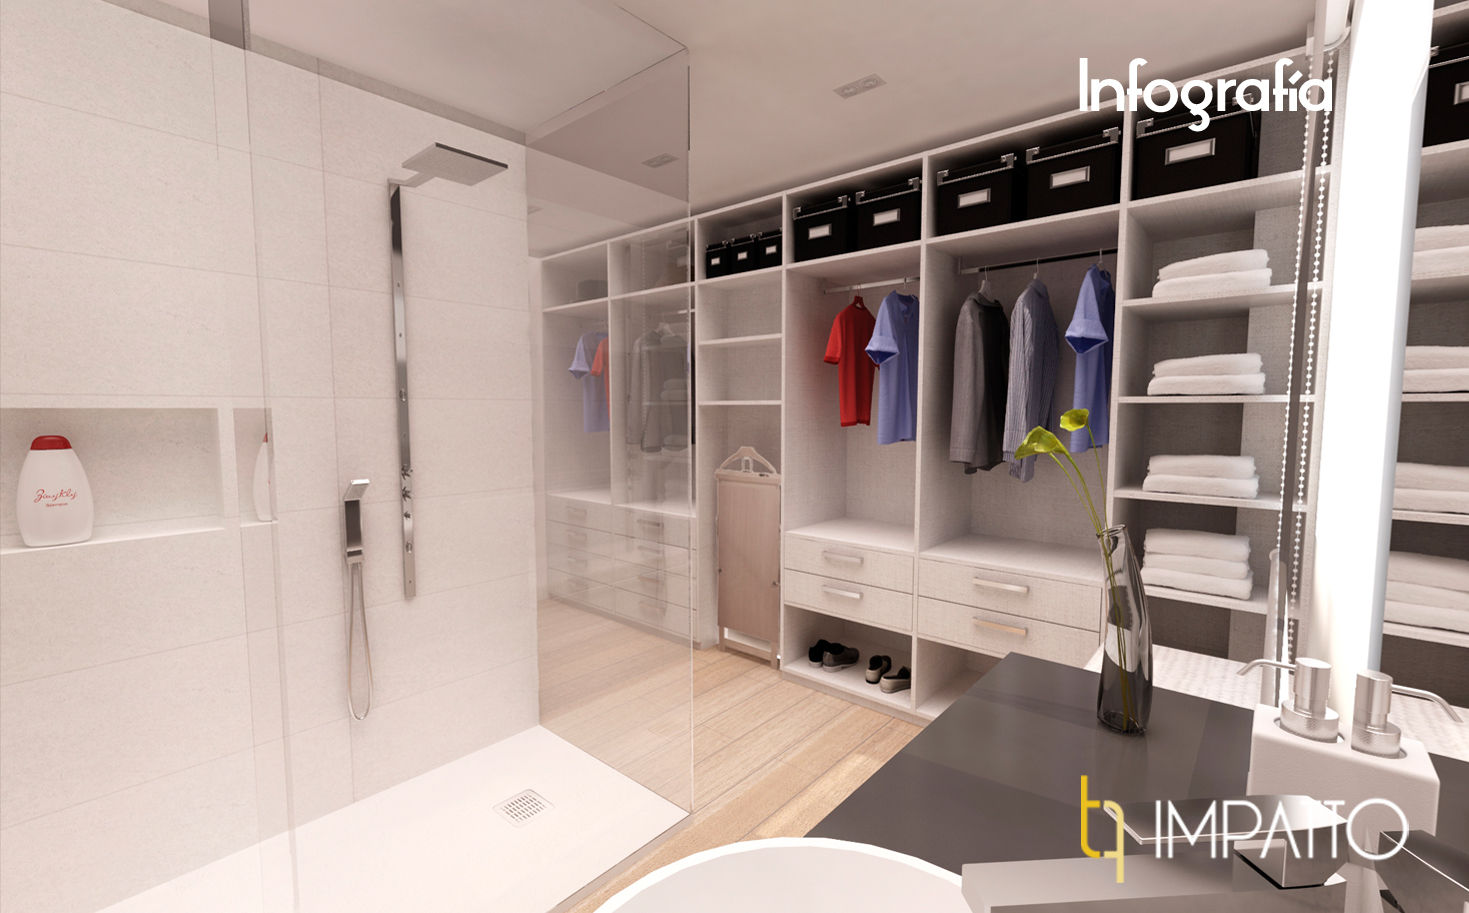 INTERIORISMO: Habitación con vestidor y baño integrados, Ausias March (Valencia), IMPATTO IMPATTO Closets